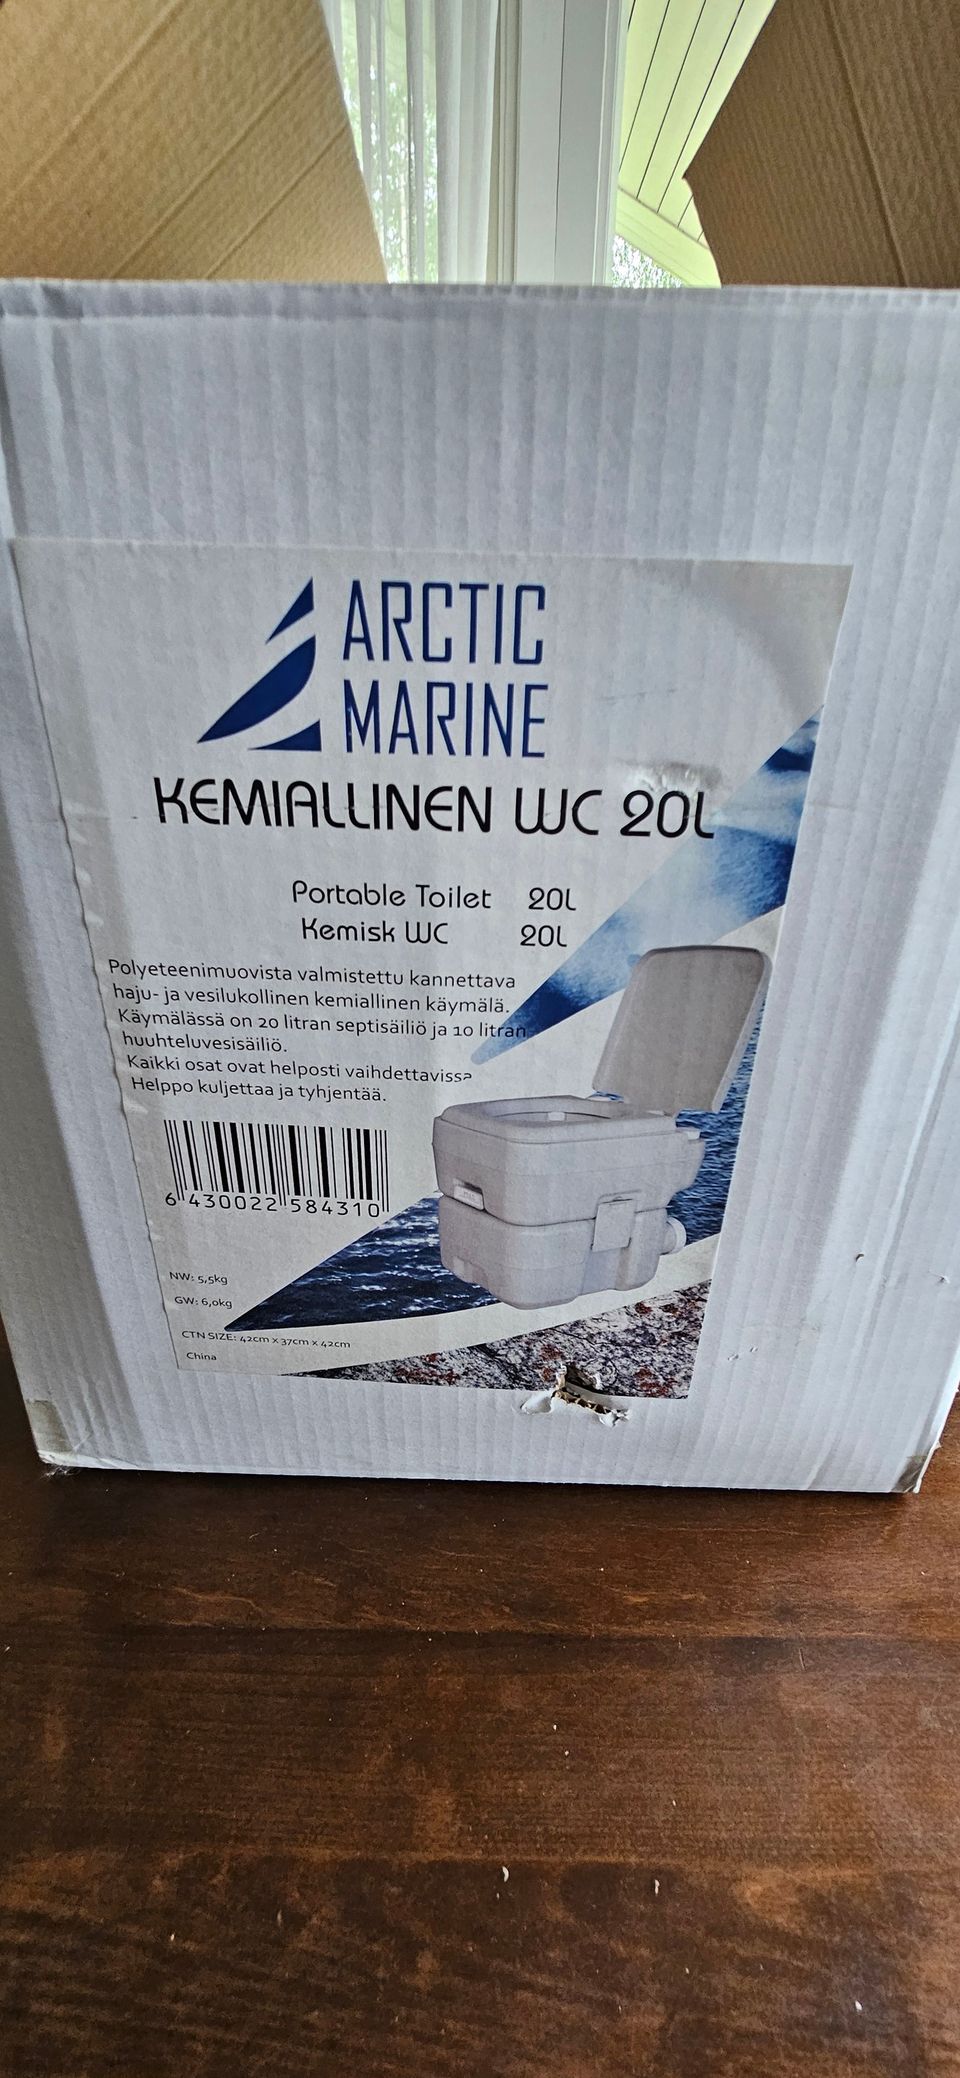 Arctic Marine kemiallinen wc 20l